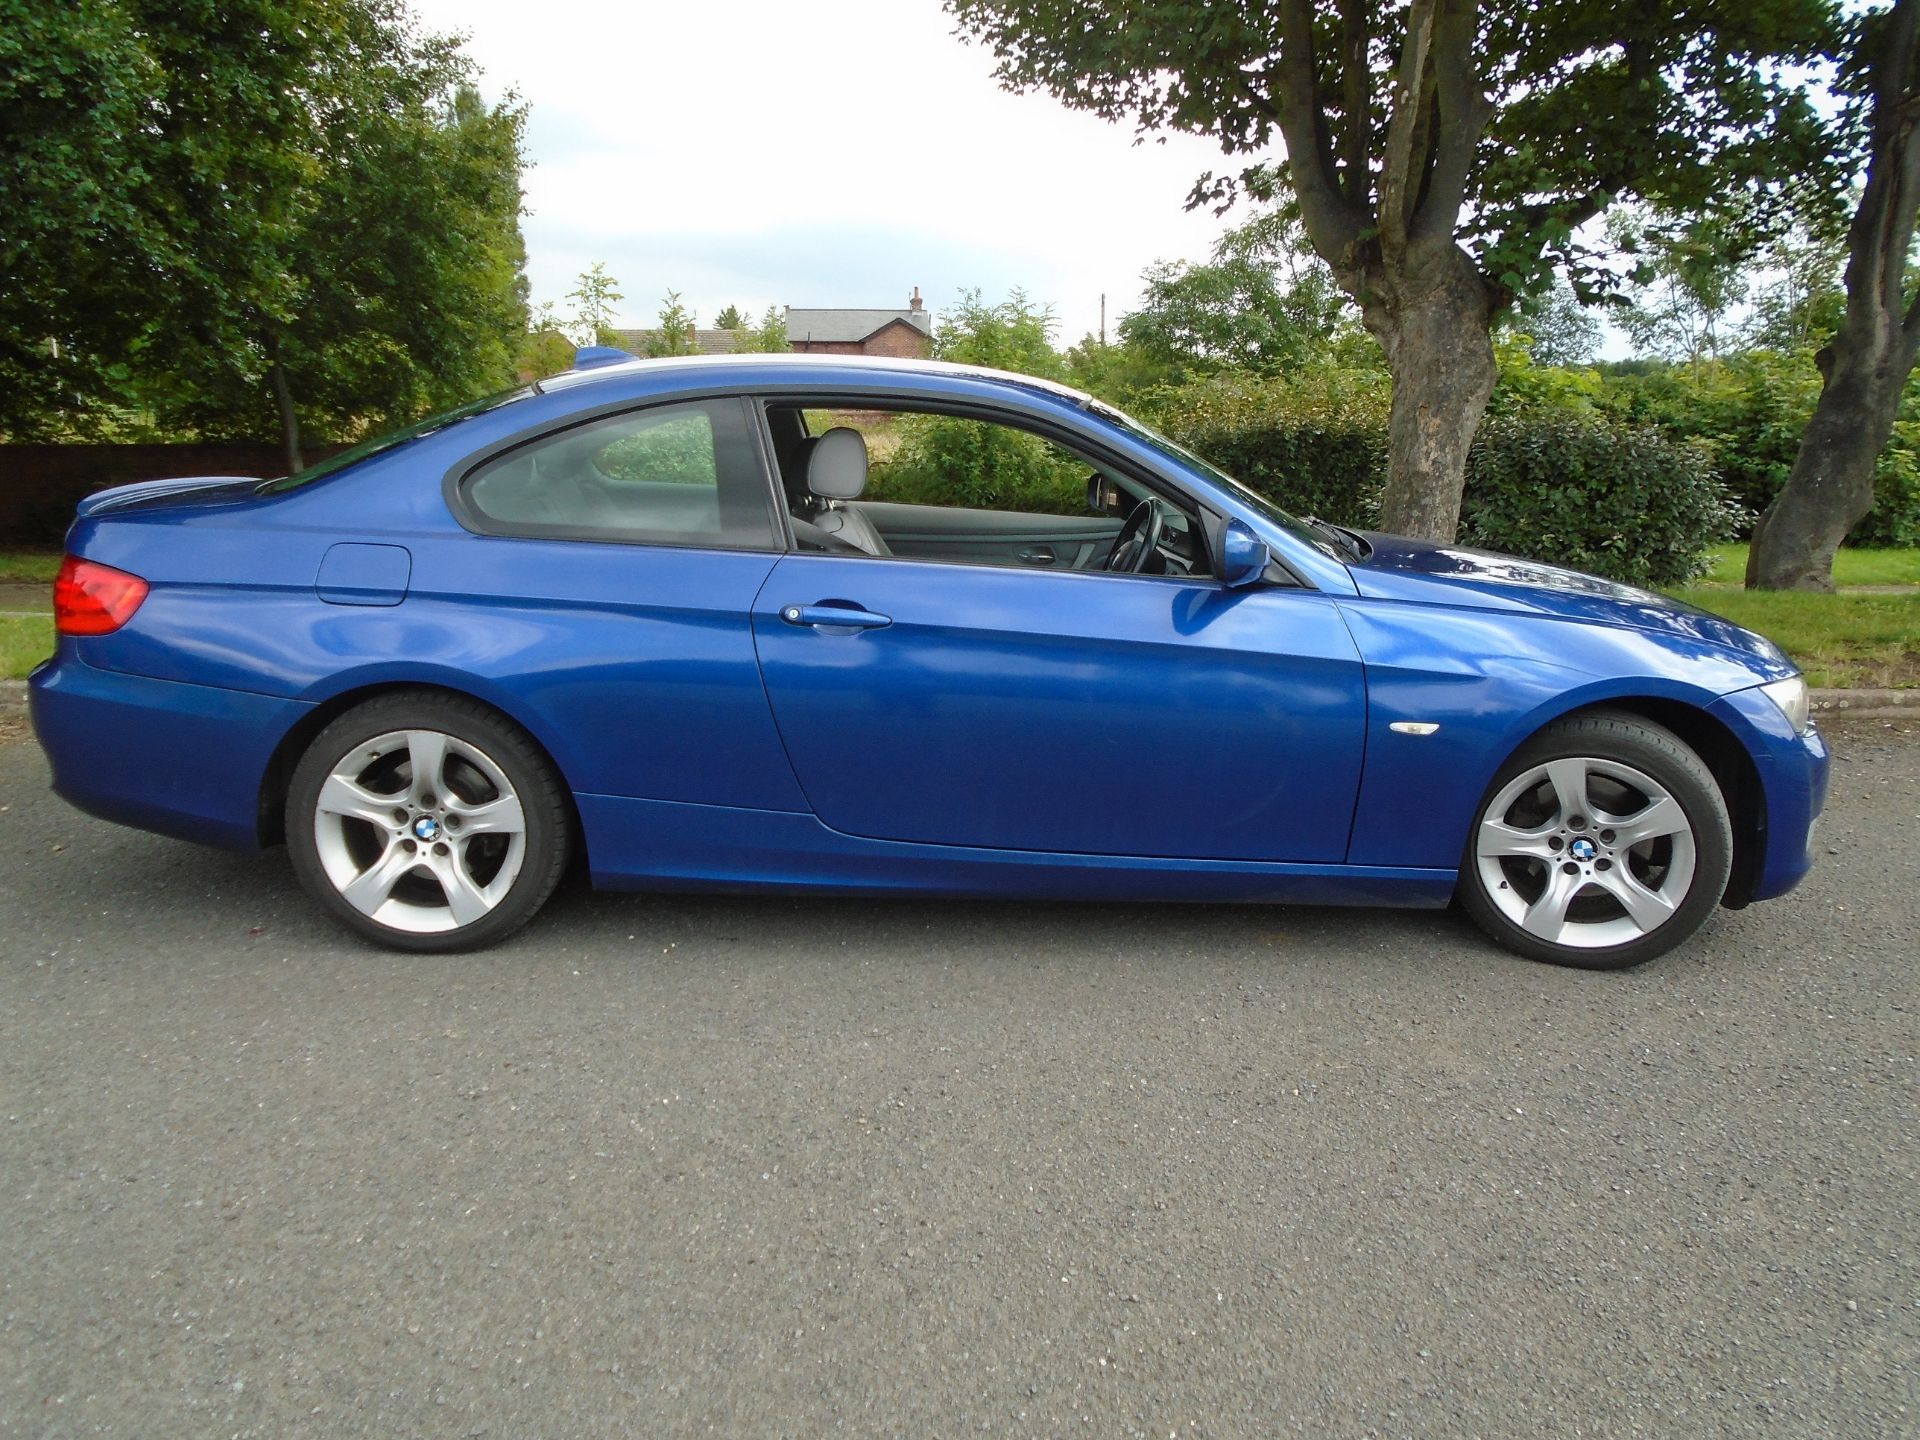 2010/60 REG BMW 320D SE AUTO 181 BLUE 2.0 DIESEL COUPE *NO VAT* - Image 3 of 7